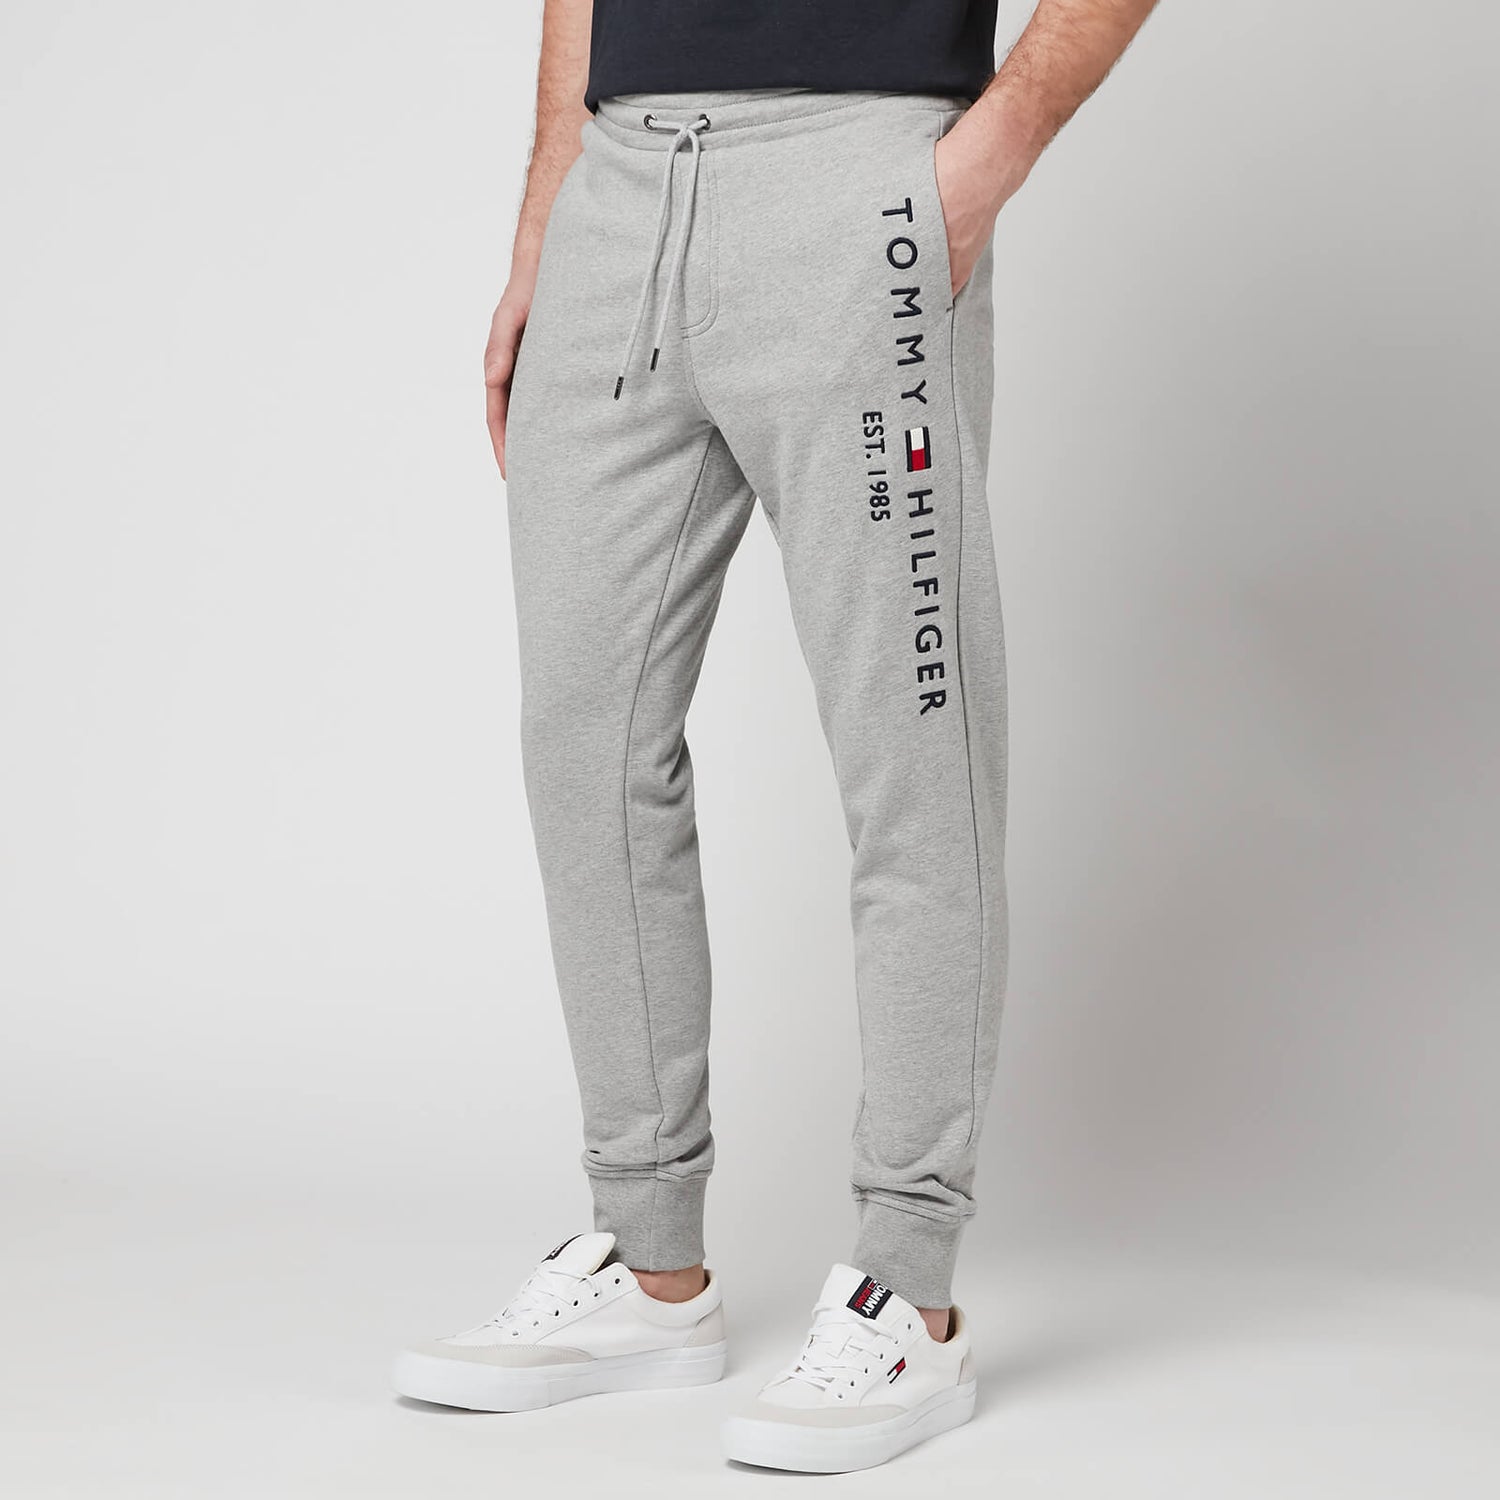 Tommy Hilfiger Men's Basic Branded Sweatpants - Light Grey Heather